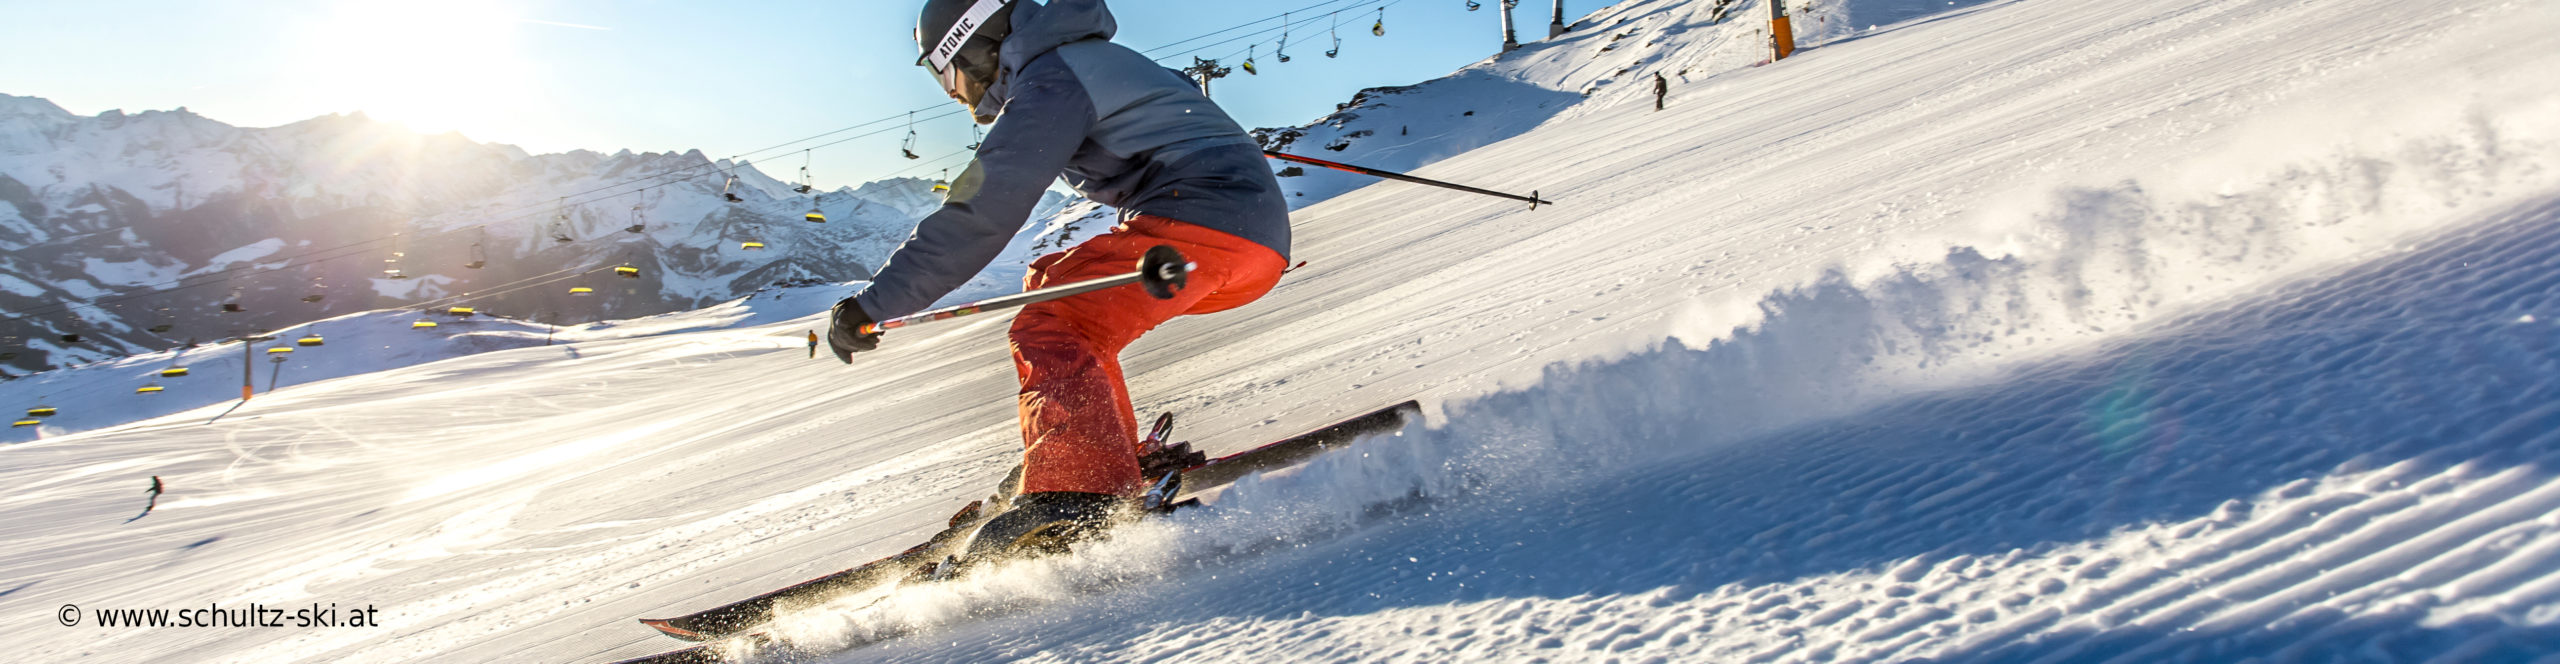 ZILLERTAL – verlängertes Skiwochenende mit 4 Skitagen – in den Weihnachtsferien – Hotel in Strass – ab Mittwoch 